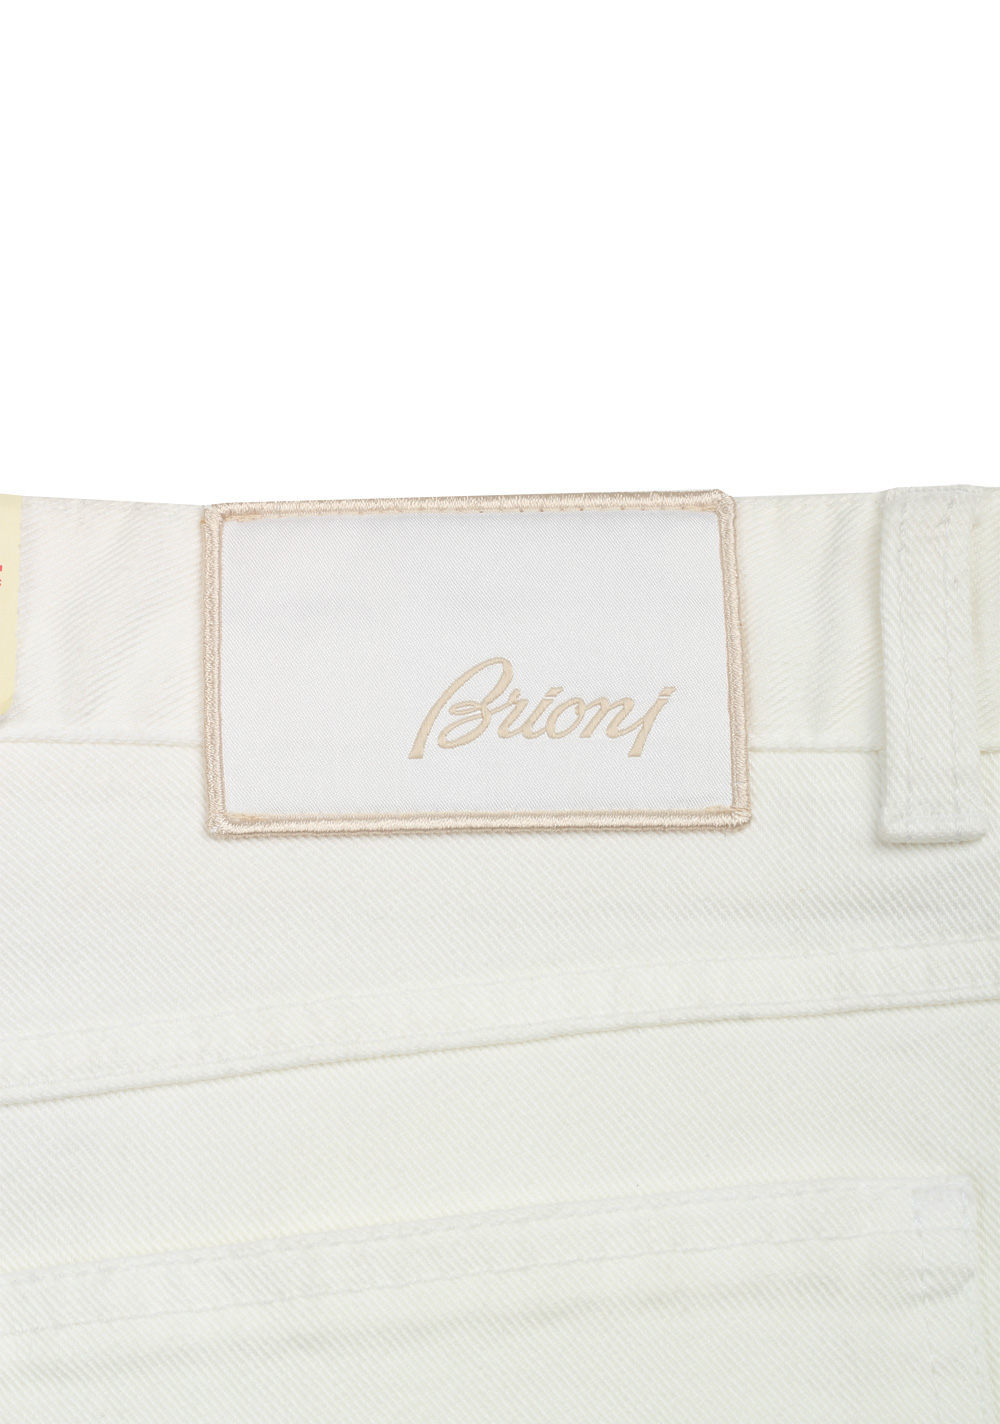 Brioni White Jeans Trousers Size 50 / 34 U.S. | Costume Limité